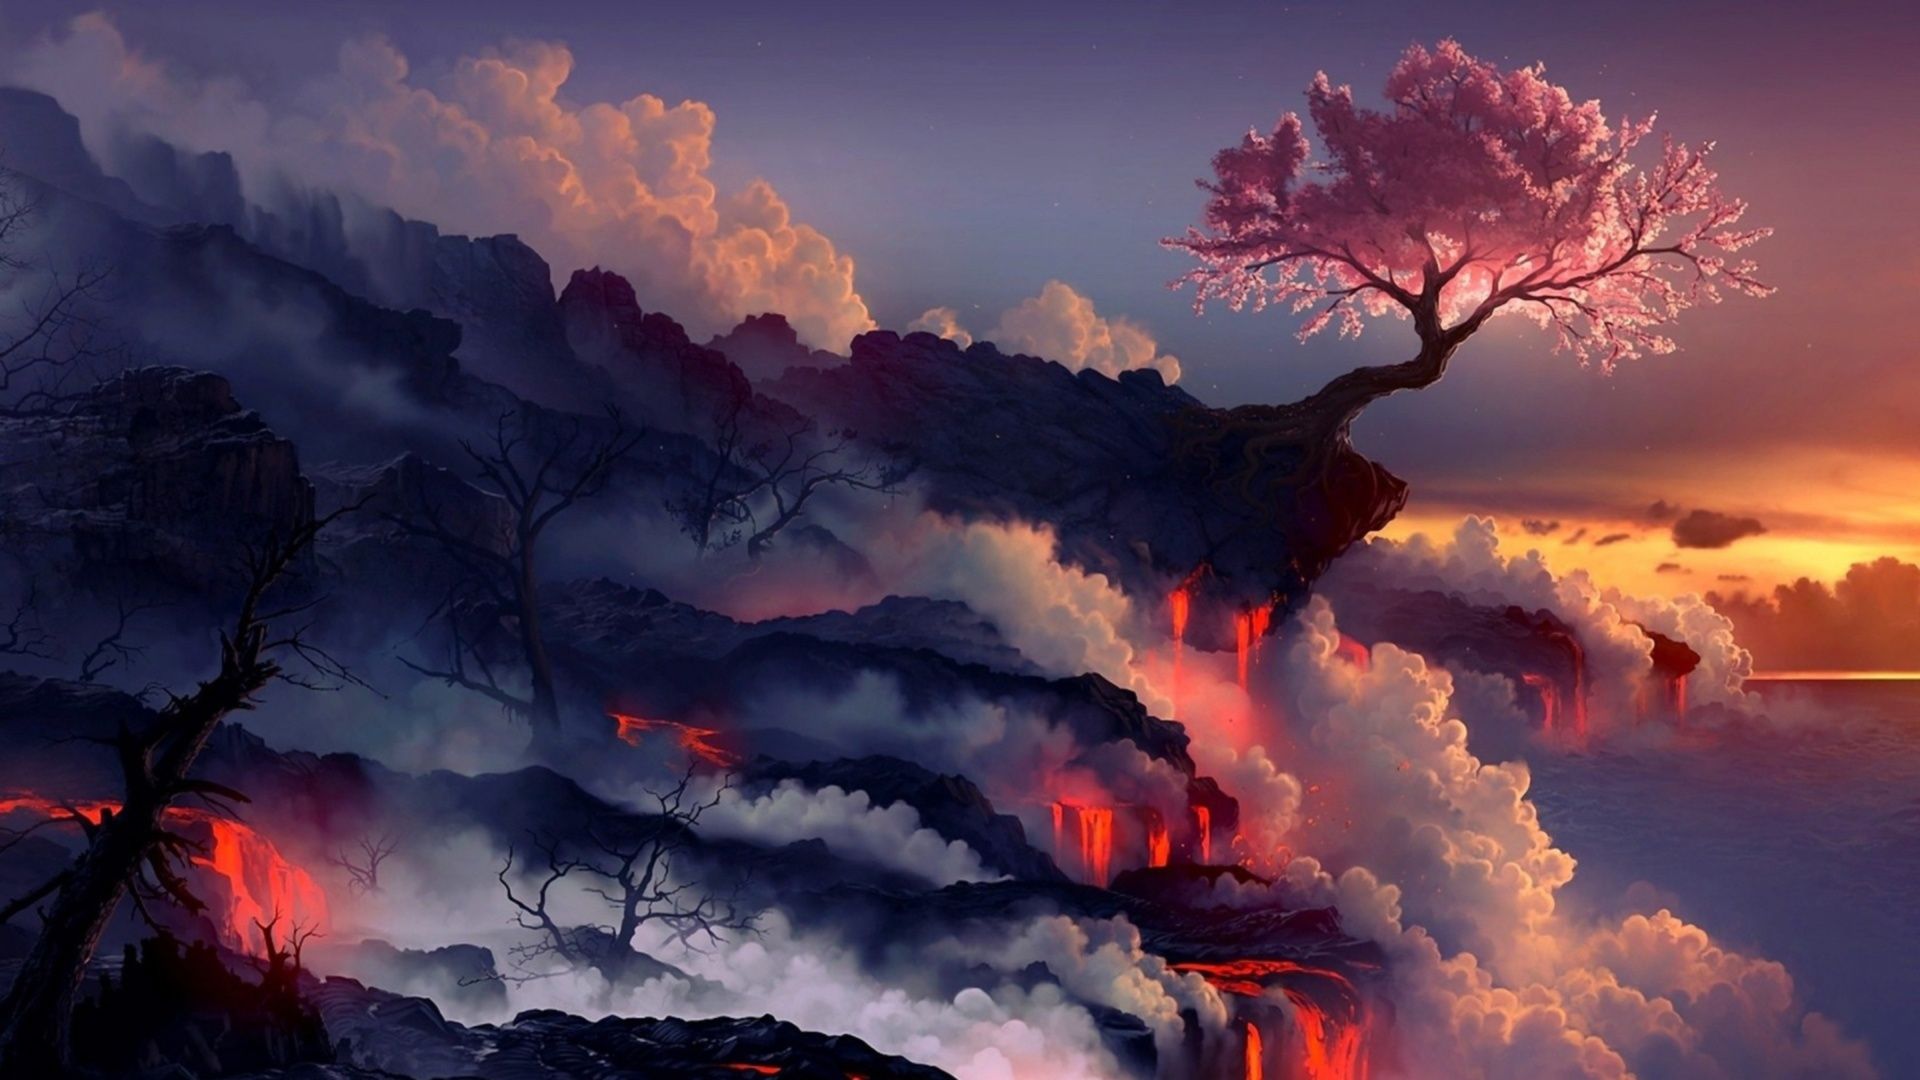 Free download Anime Dark Landscape Wallpaper Desktop Background at